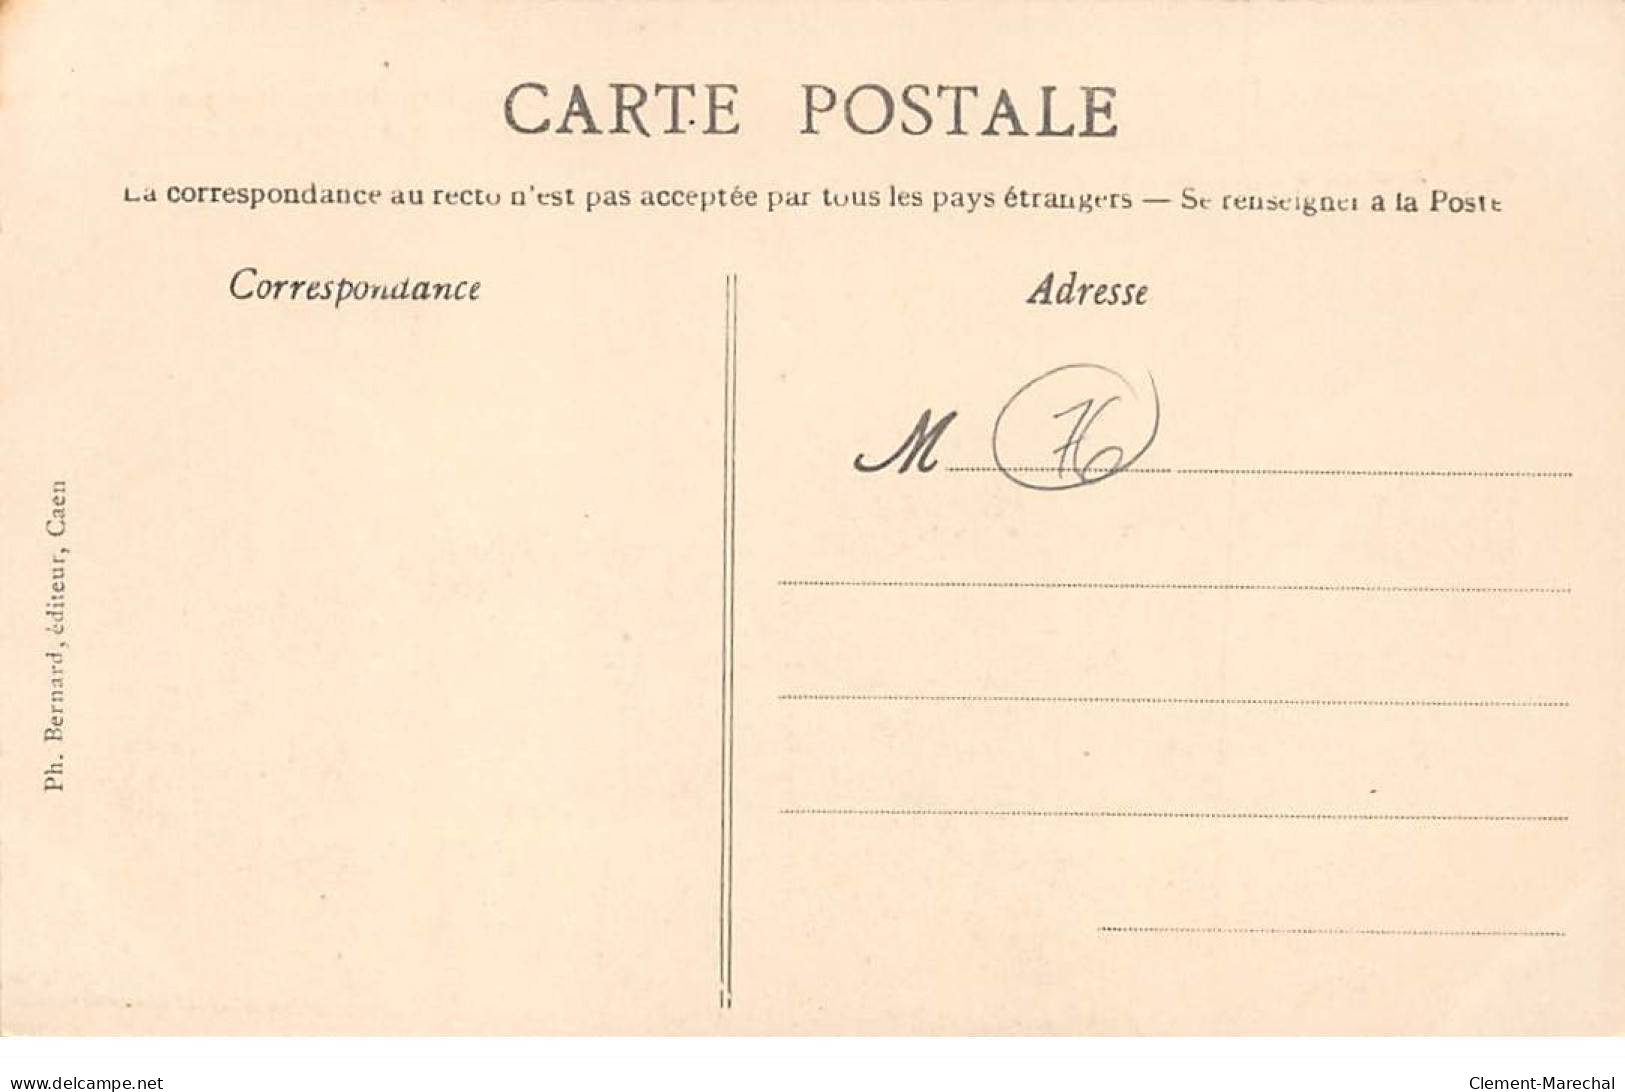 Meeting D'Aviation De La Baie De Seine - TROUVILLE - LE HAVRE - 1910 - Hanriot - Très Bon état - Unclassified